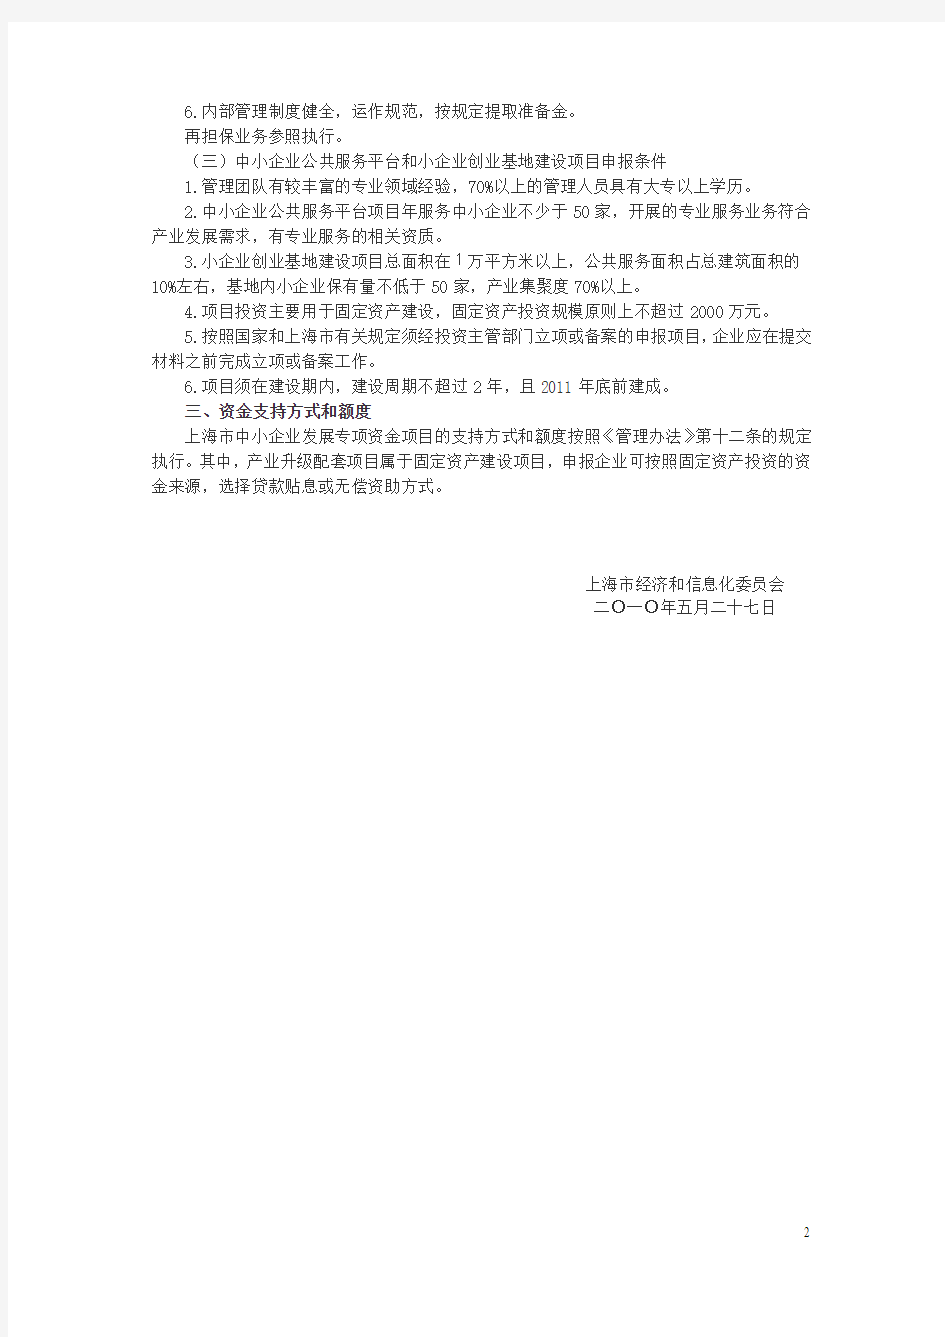 上海市经济信息化委关于组织申报2010年第一批上海市中小企业发展专项资金项目的通知